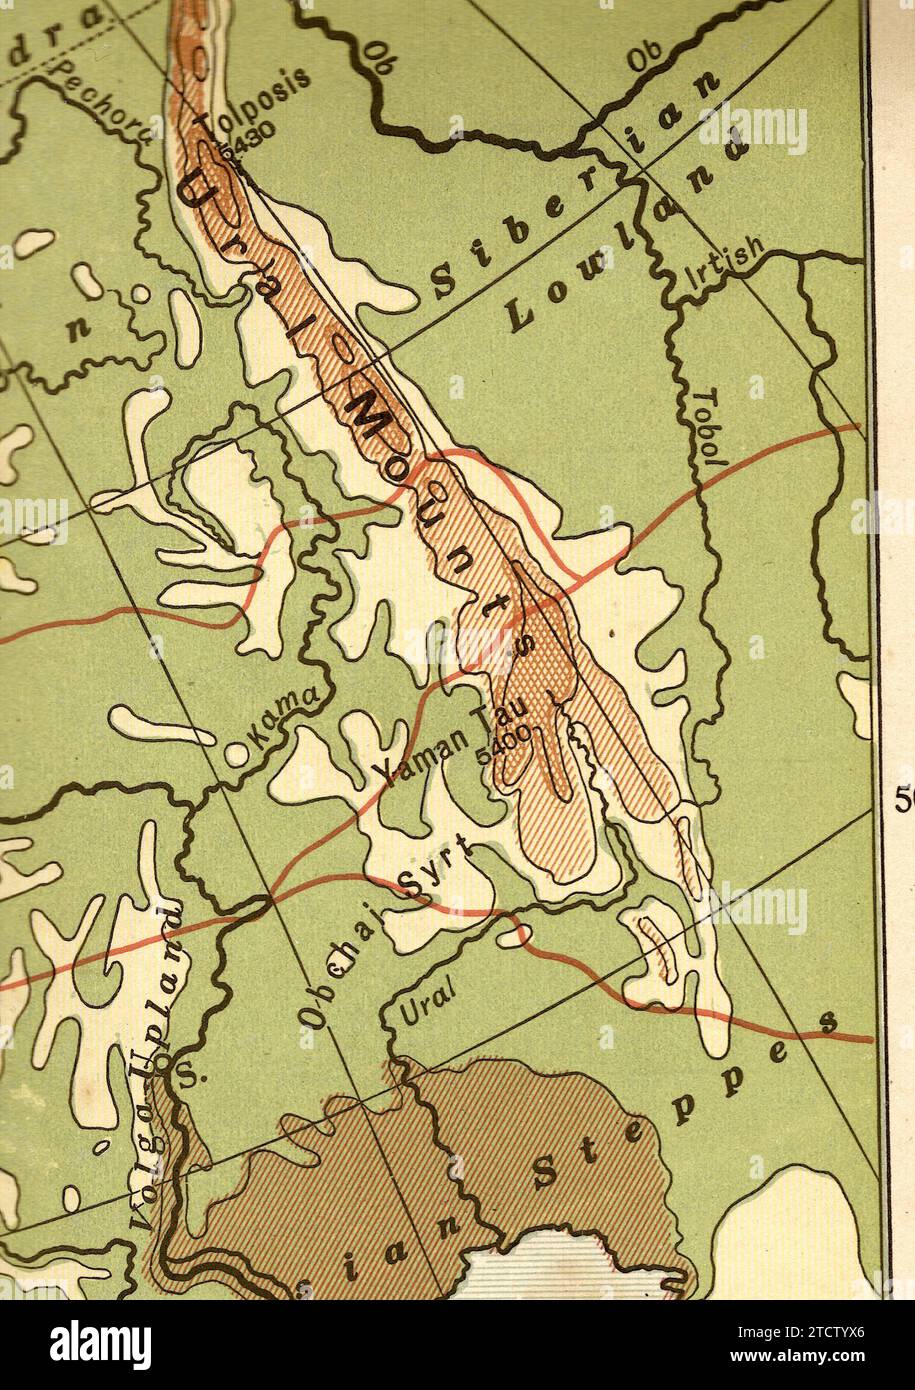 Una carta geografica d'epoca/antica nella Seppia degli Urali e della Siberia. Foto Stock